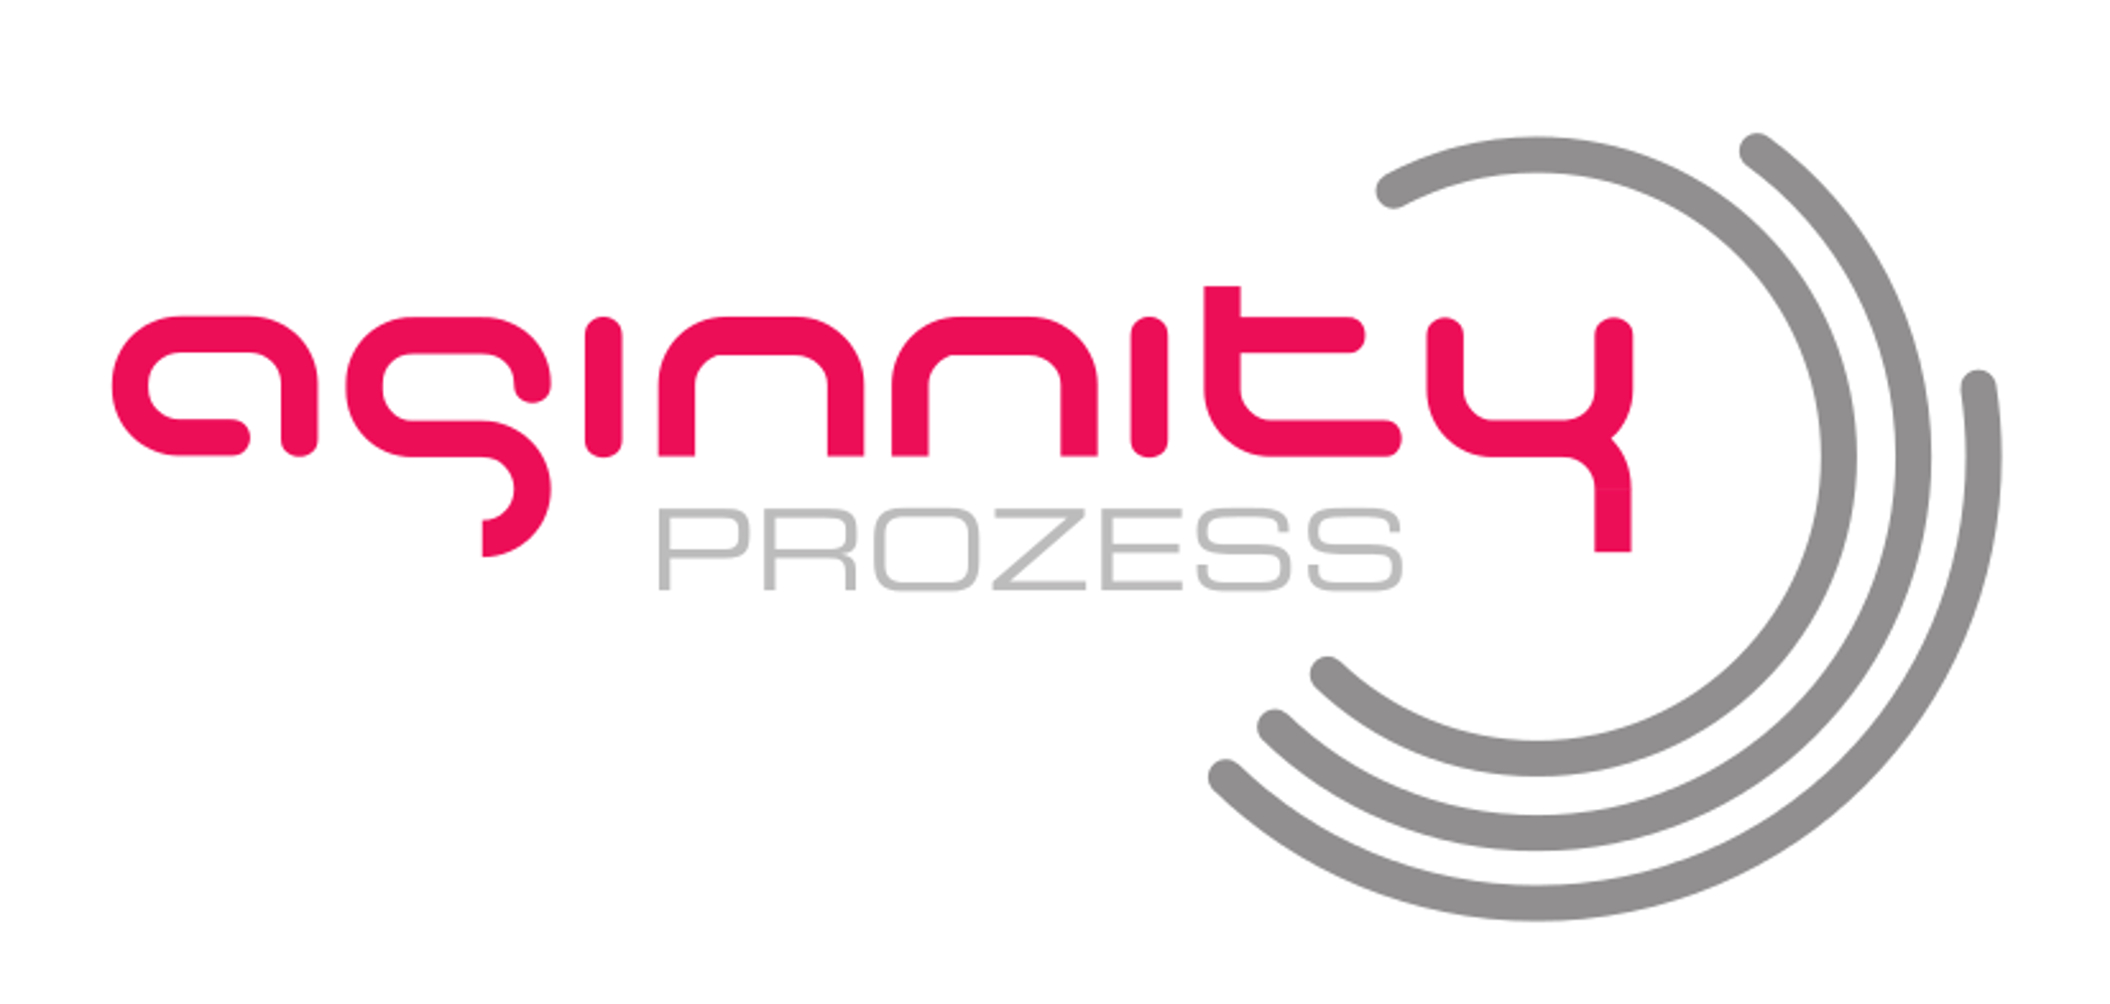 aginnity Logo 2000